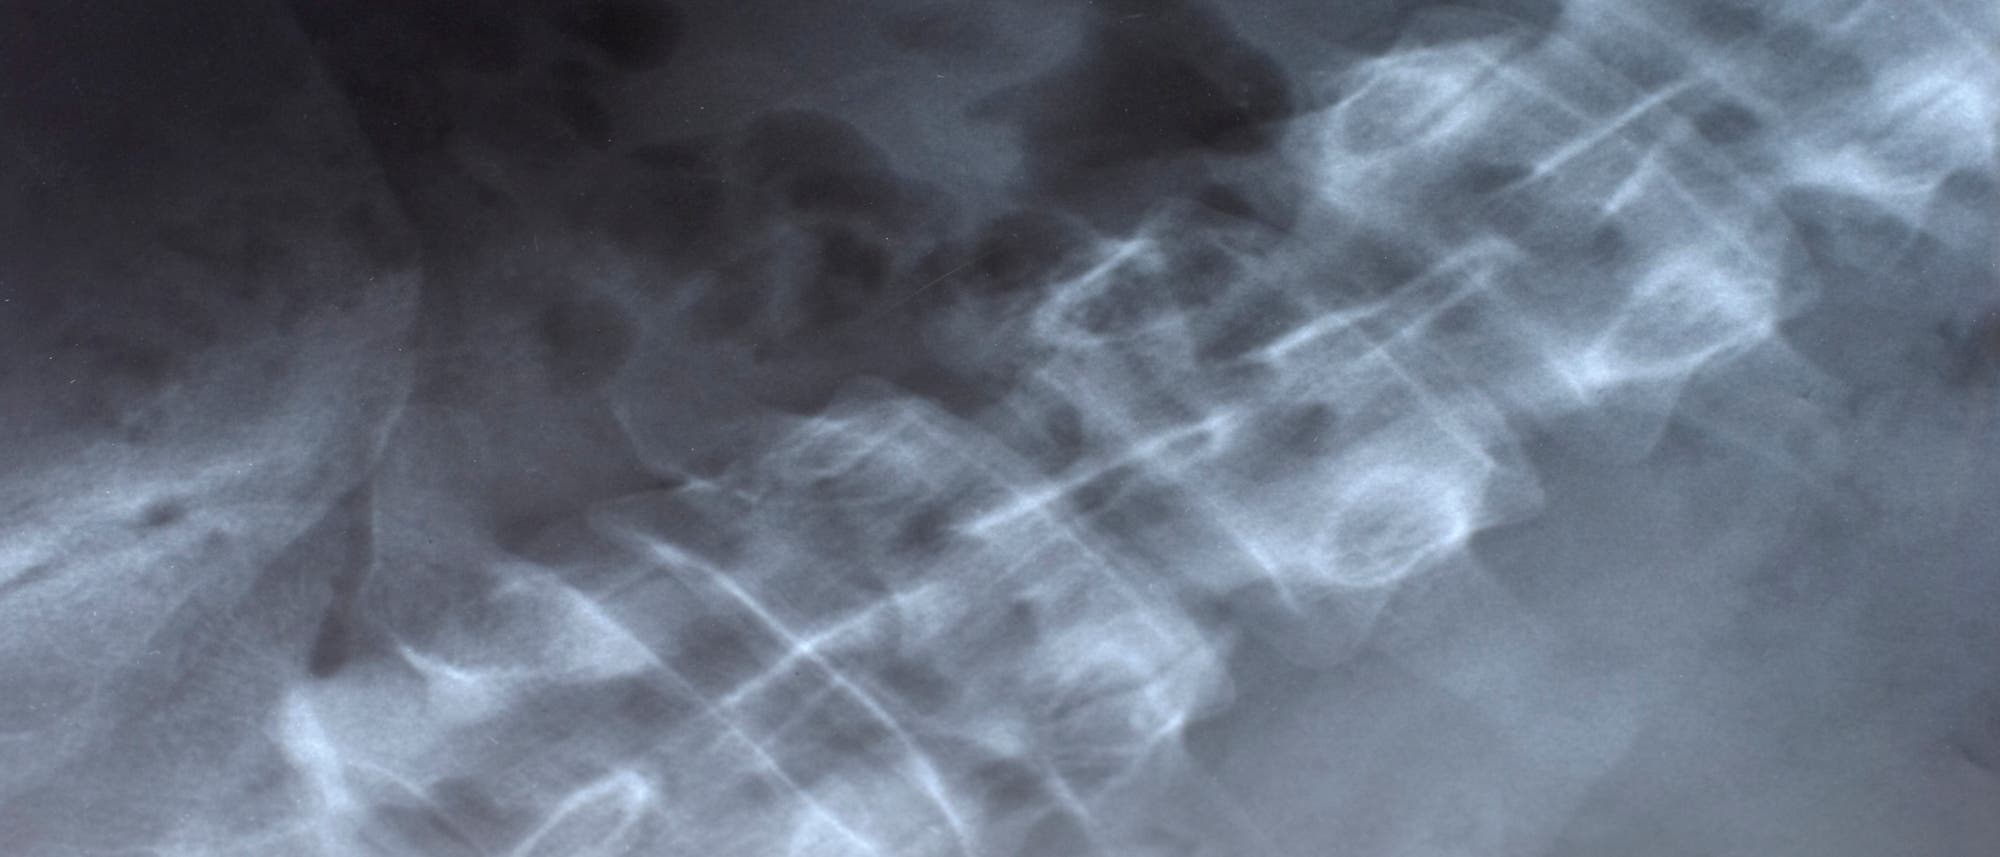 Röntgenaufnahme der Wirbelsäule